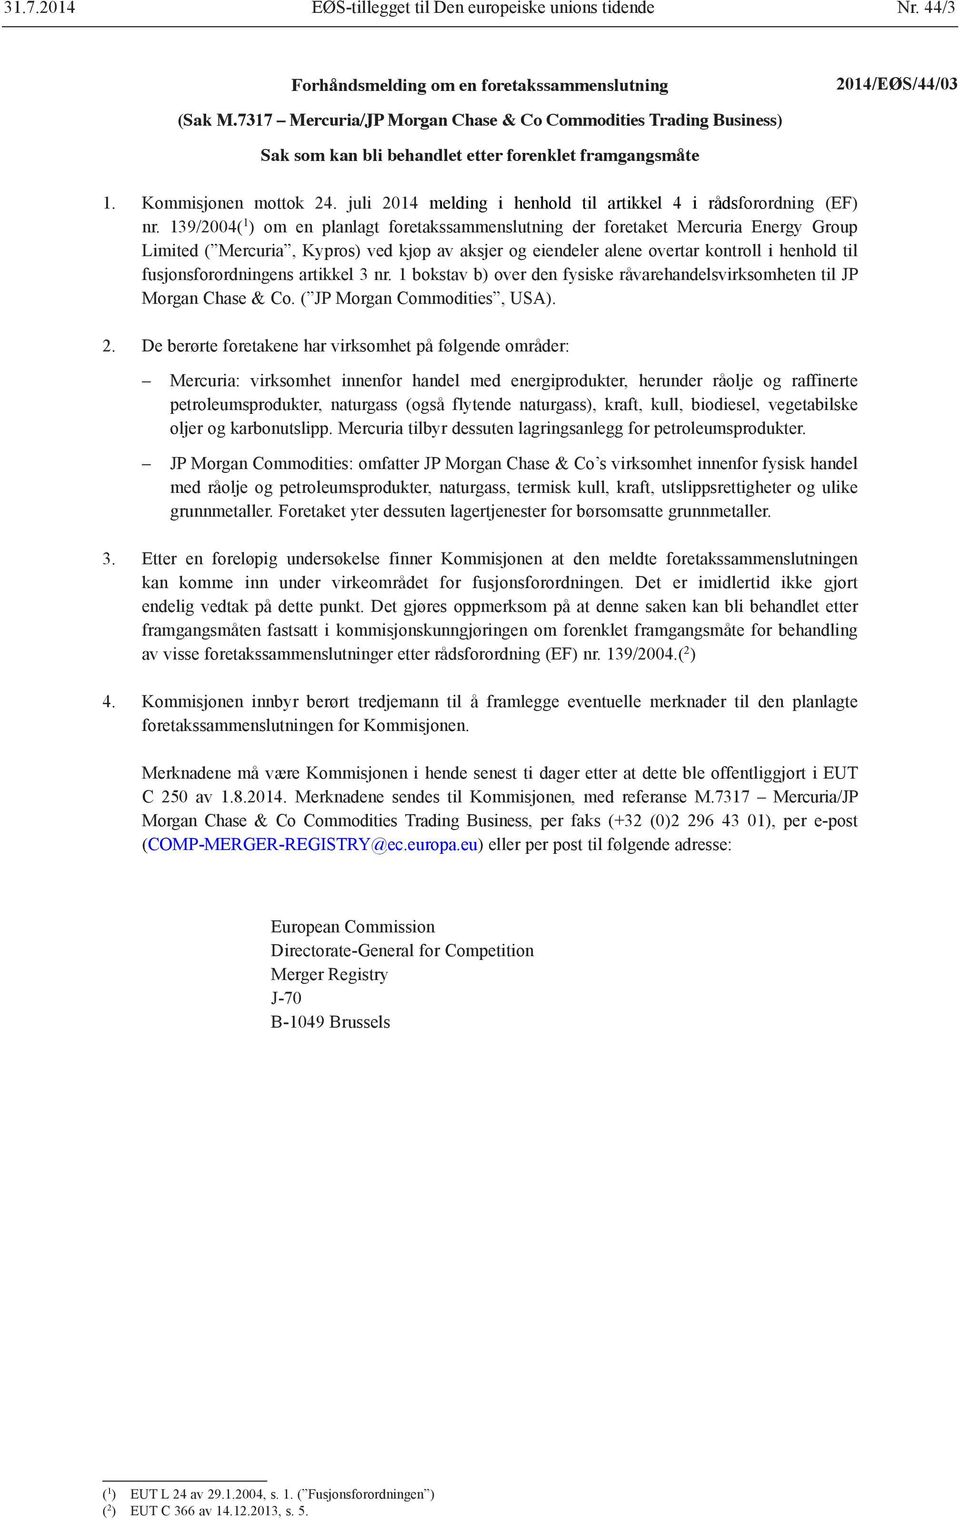 juli 2014 melding i henhold til artikkel 4 i rådsforordning (EF) nr.